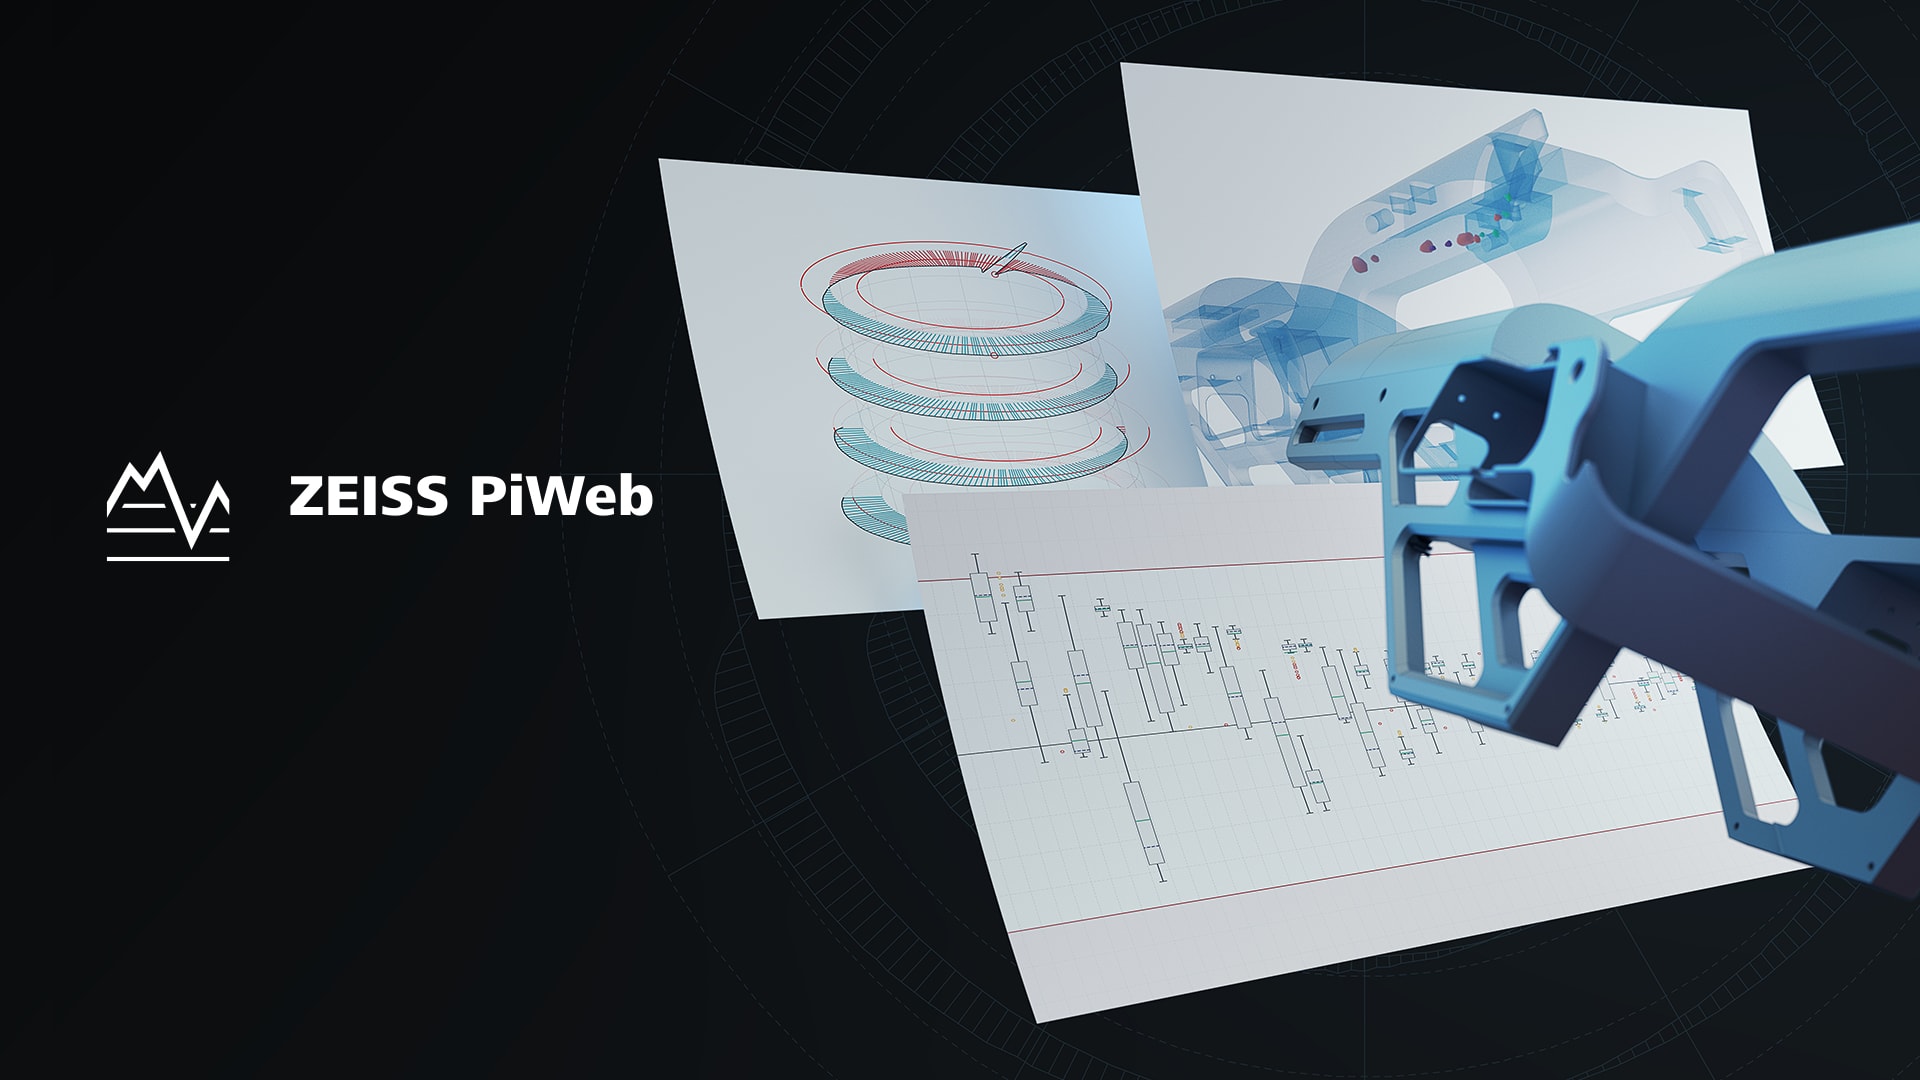 Impression des données de mesure générées par ZEISS PiWeb